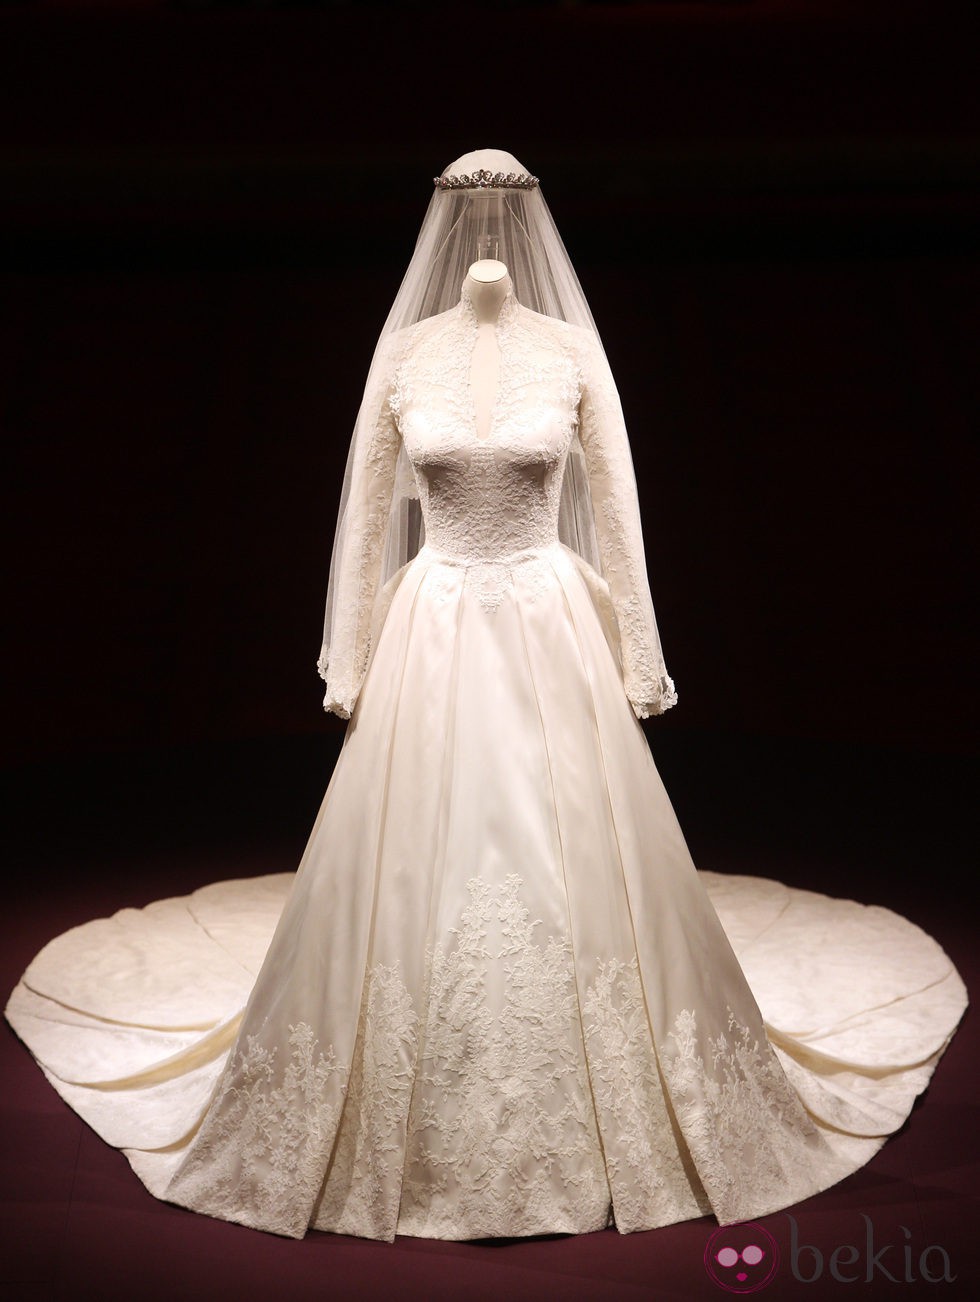 Vestido de novia diseñado por Sarah Burton para la Duquesa de Cambridge